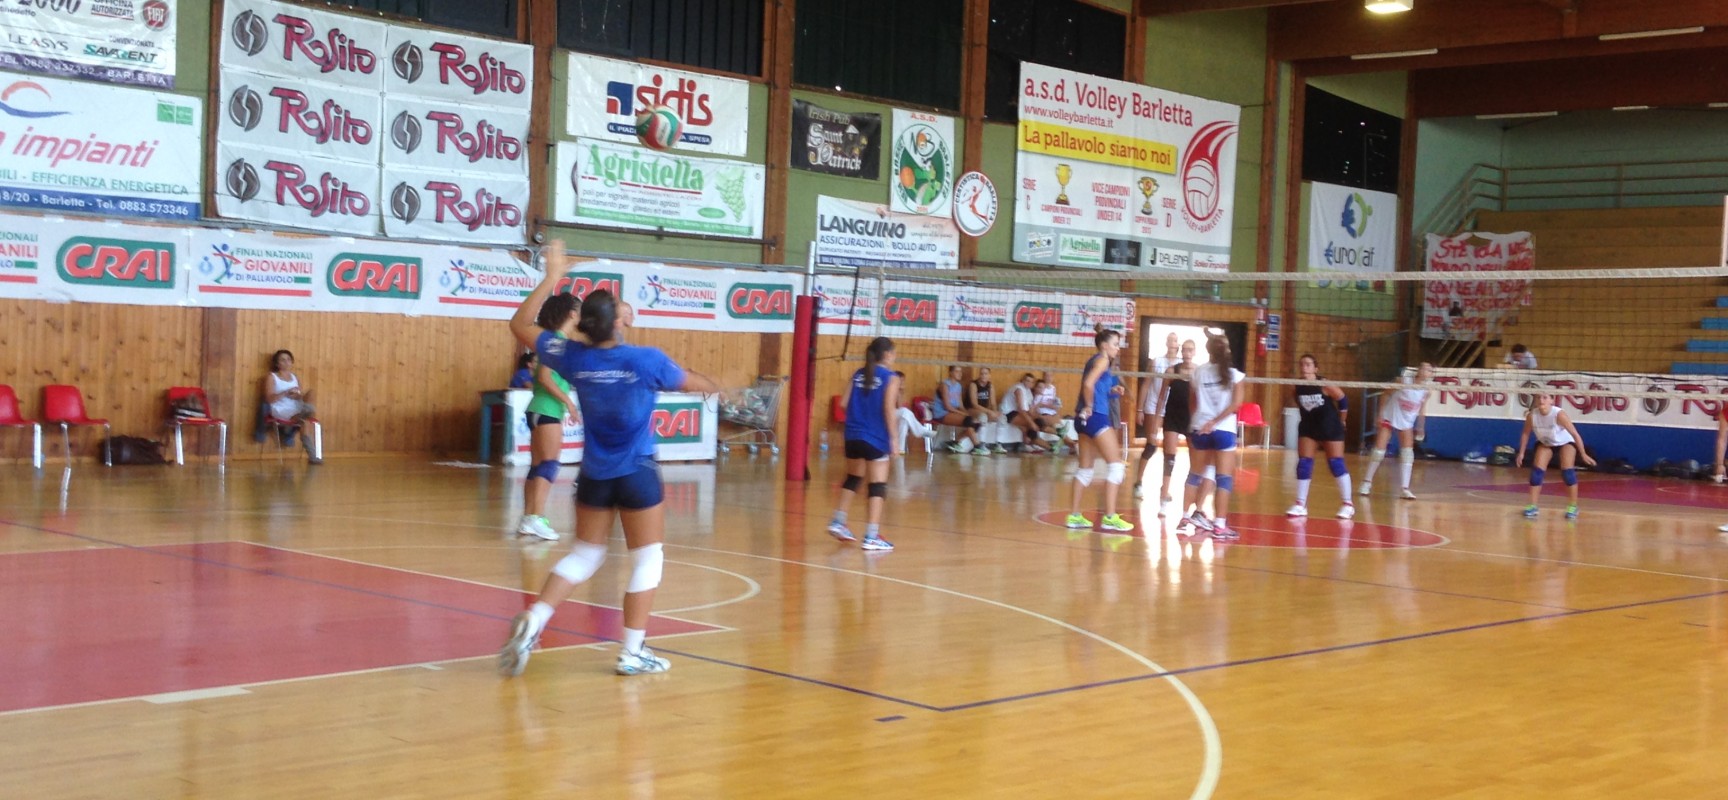 Sportilia Volley, esordio positivo nella prima amichevole stagionale